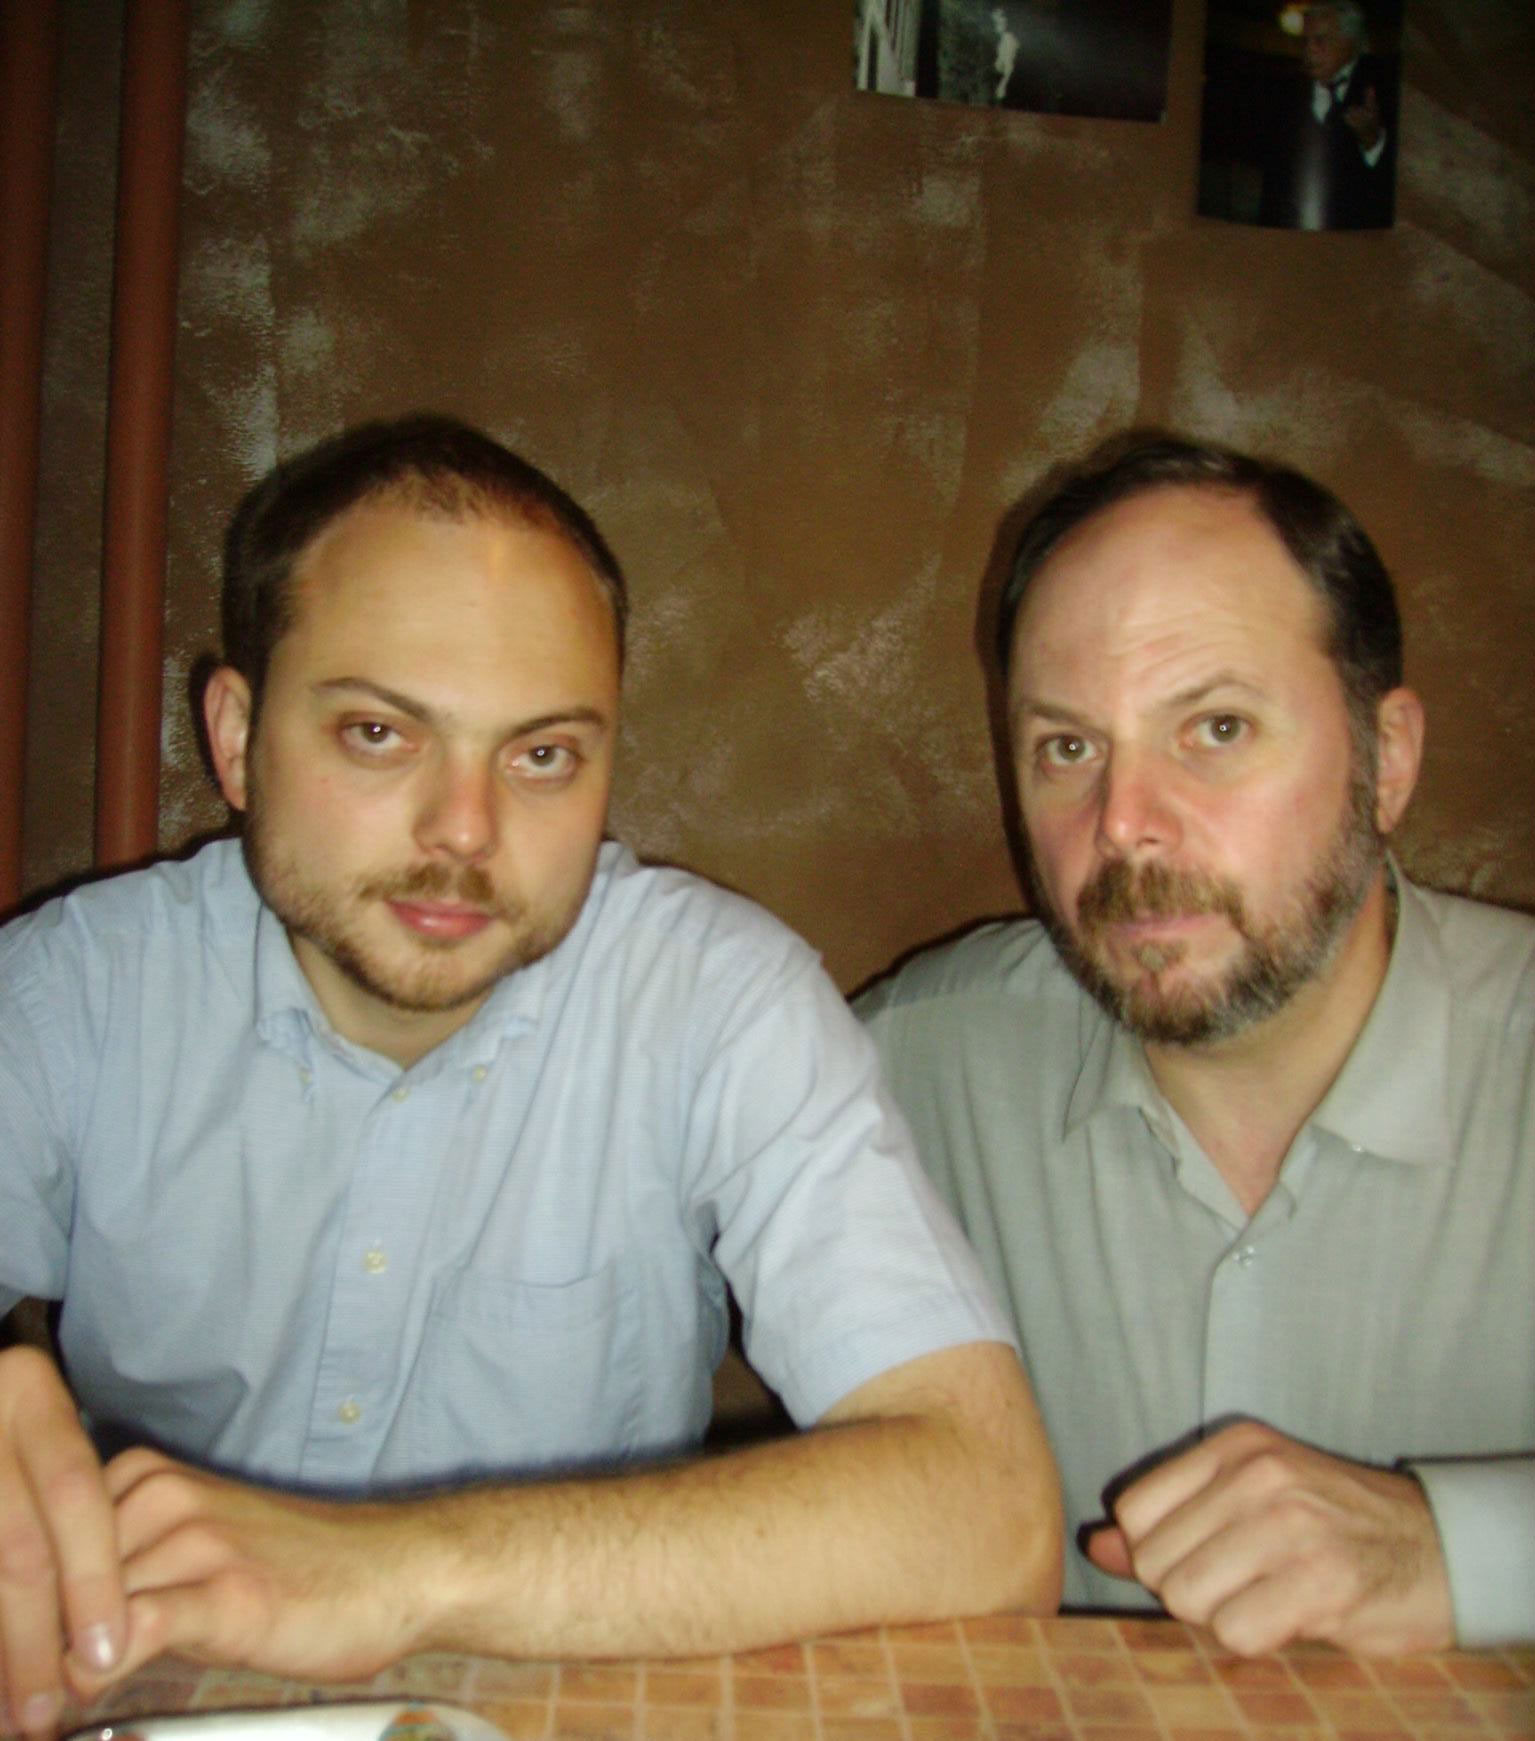 Vladimir Kara-Murza and his father, Vladimir Kara-Murza Sr., Moscow, 2007